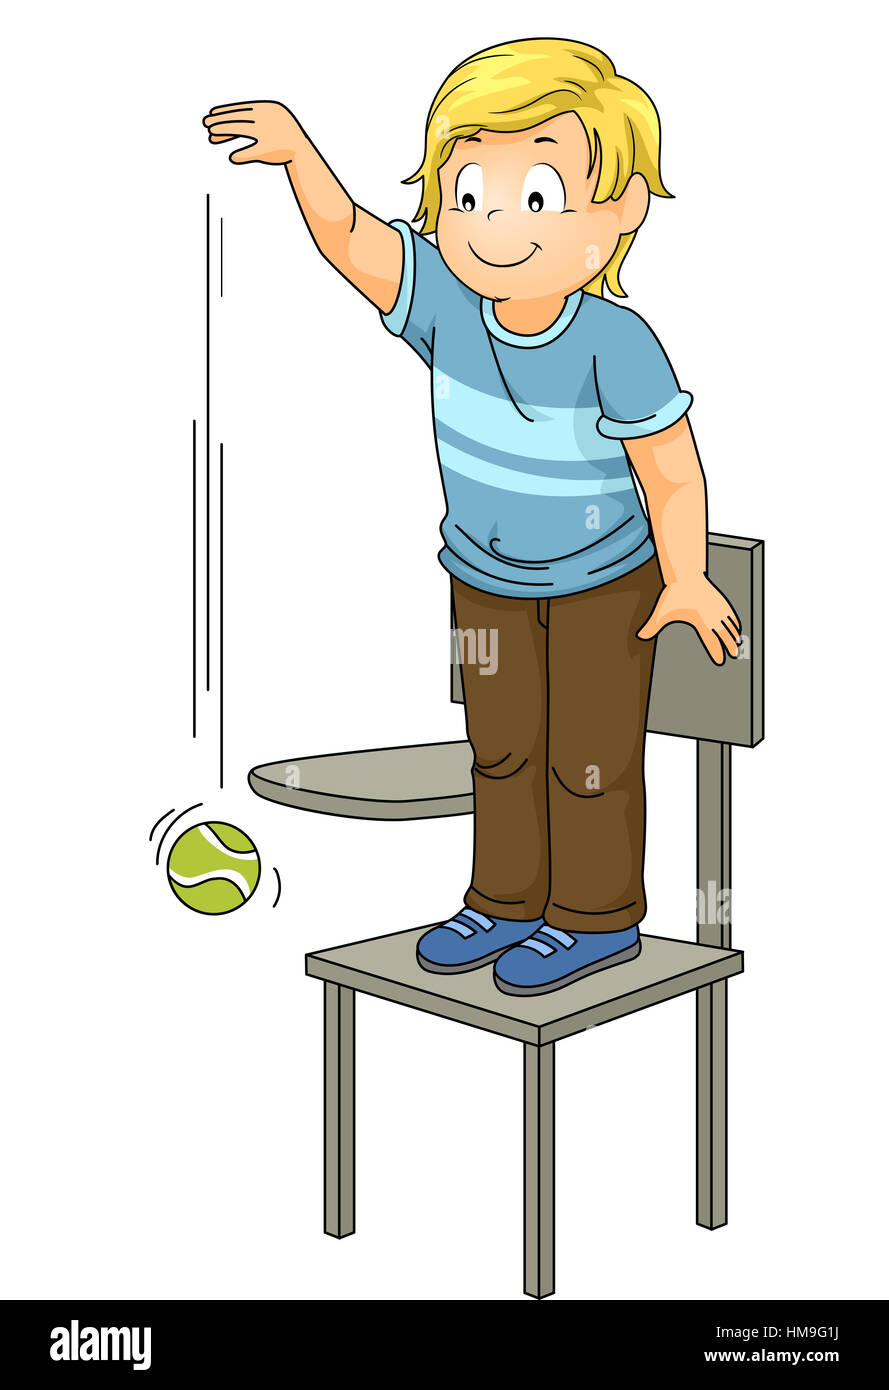 Abbildung eines kleinen Jungen, der einen Ball von einer hohen Position ablegen Stockfoto